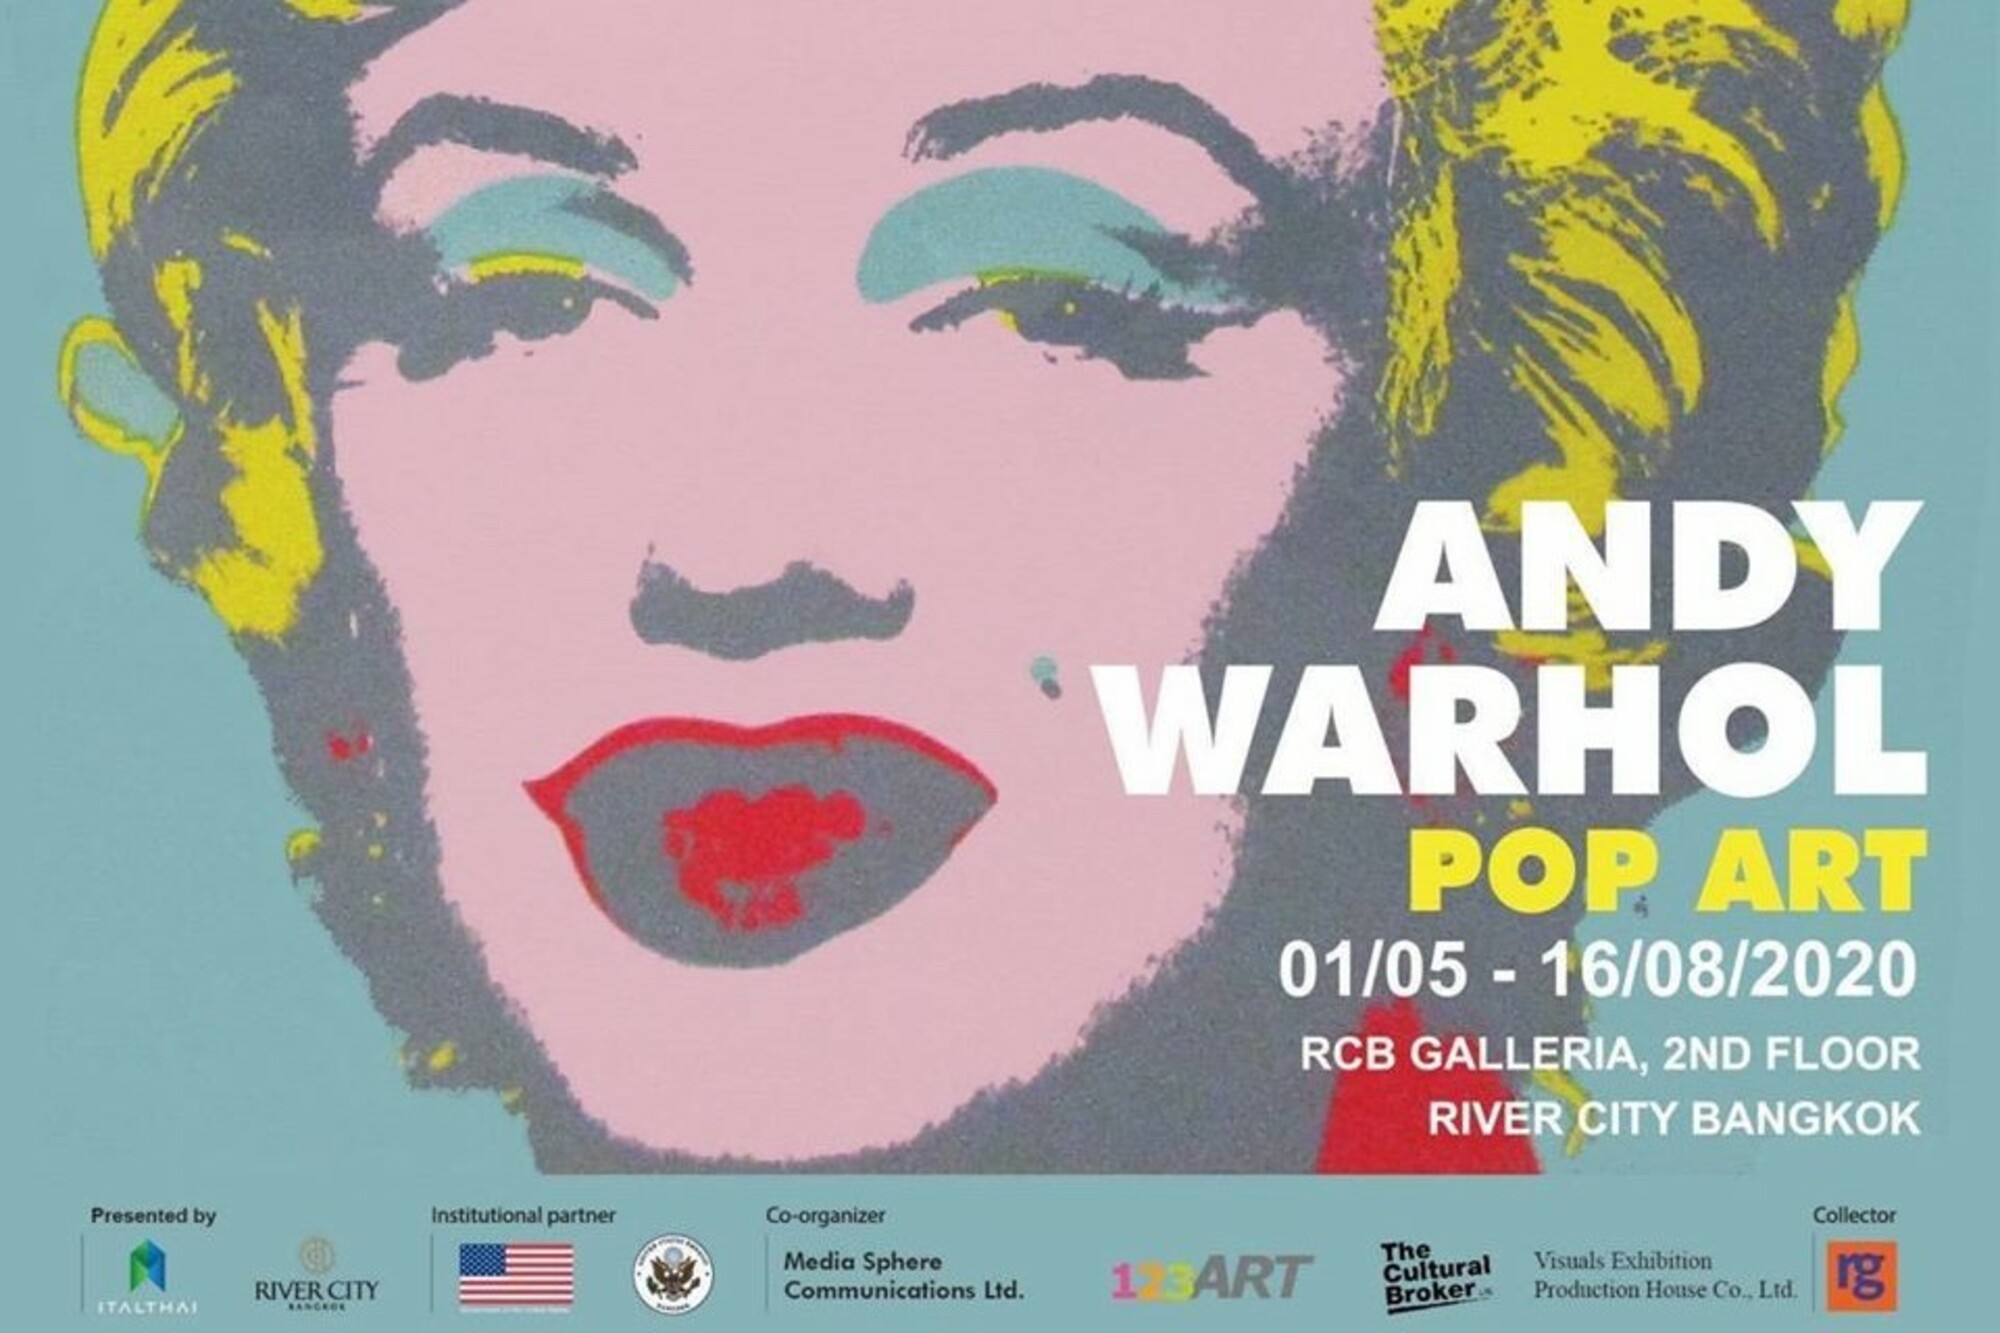 【曼谷藝術展】安迪·沃荷：普普藝術展(Andy Warhol: Pop Art)早鳥與贈票優惠開跑│曼谷河城RCB